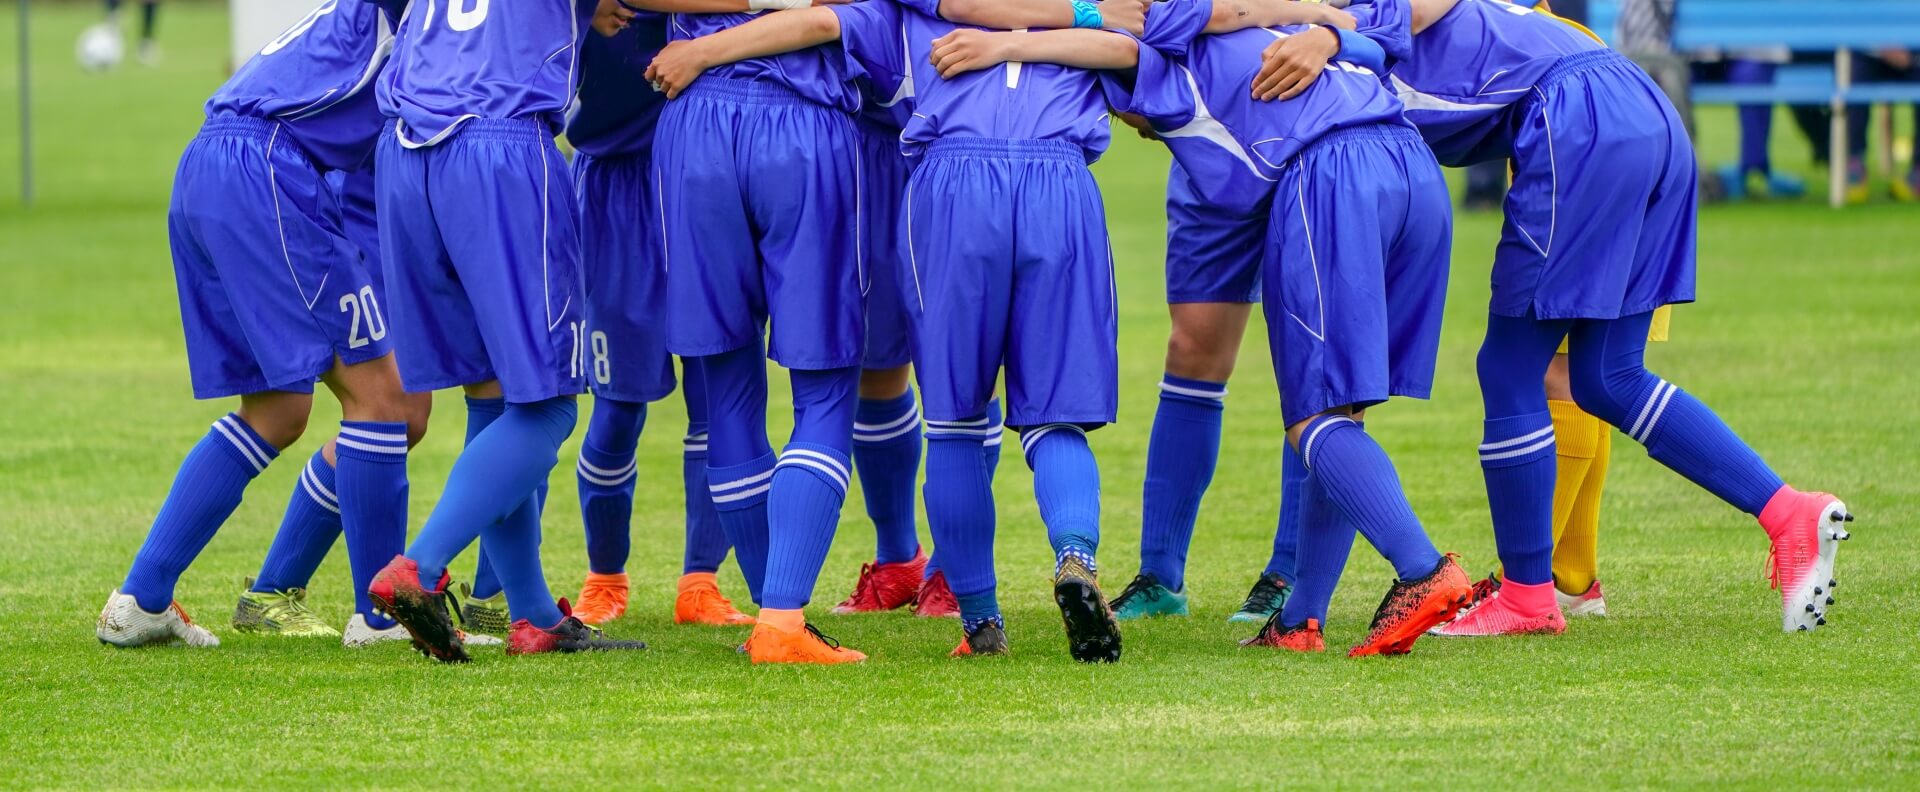 中学サッカーの保護者会の役割は 解決 中学部活動faq